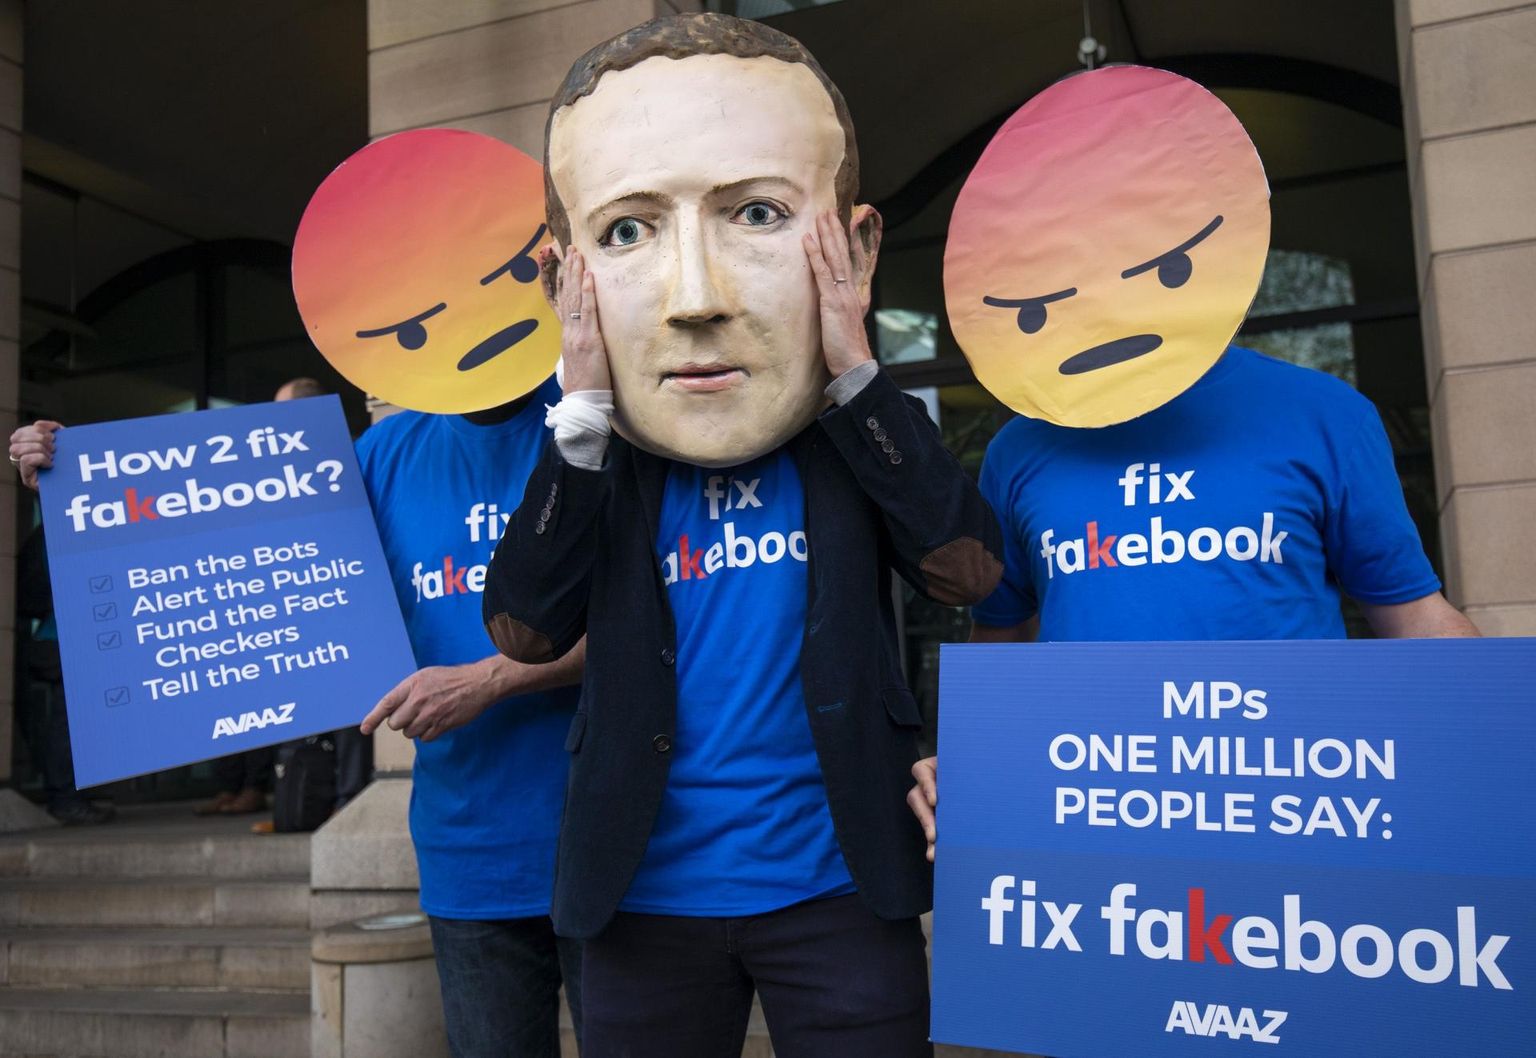 USA vabaühenduse Avaaz meeleavaldus, juhtimaks tähelepanu Facebooki jõuetusele libauudistega võitlemisel.